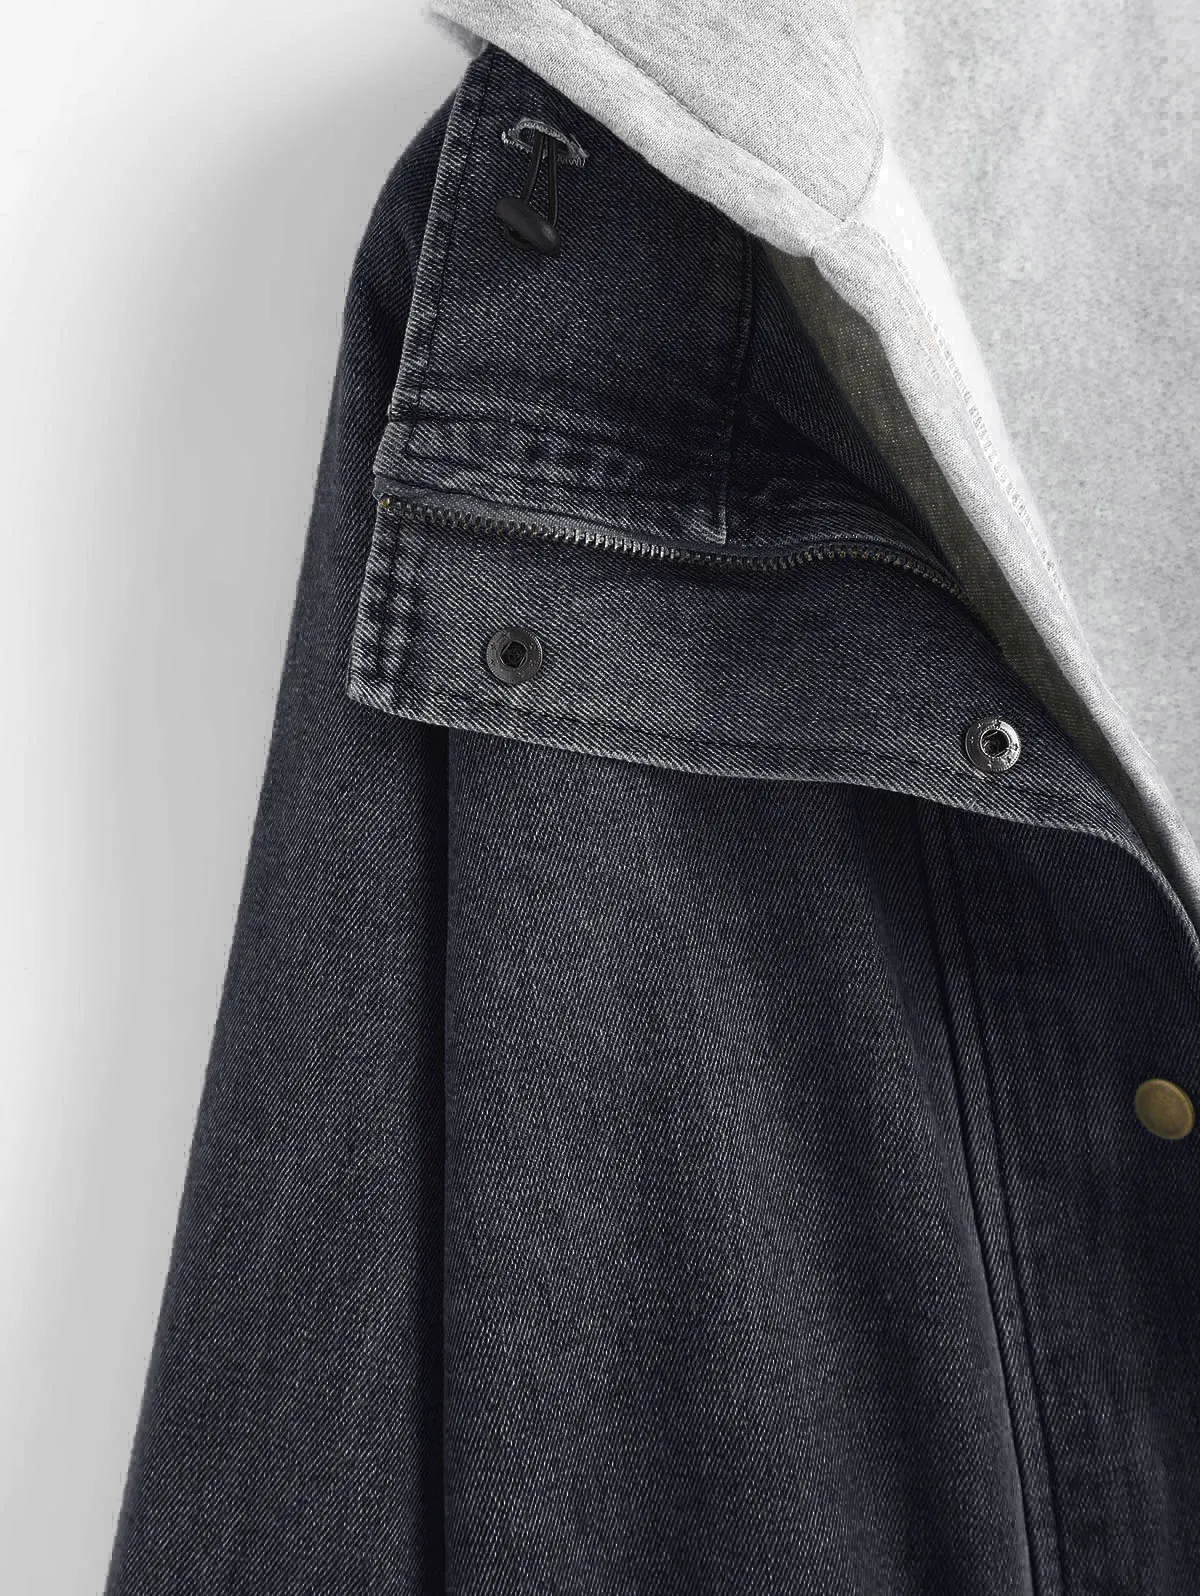 ZAFUL джинсовая куртка на пуговицах с капюшоном из двух частей Женская Куртка Свободная джинсовая с широкой талией длинная однобортная куртка